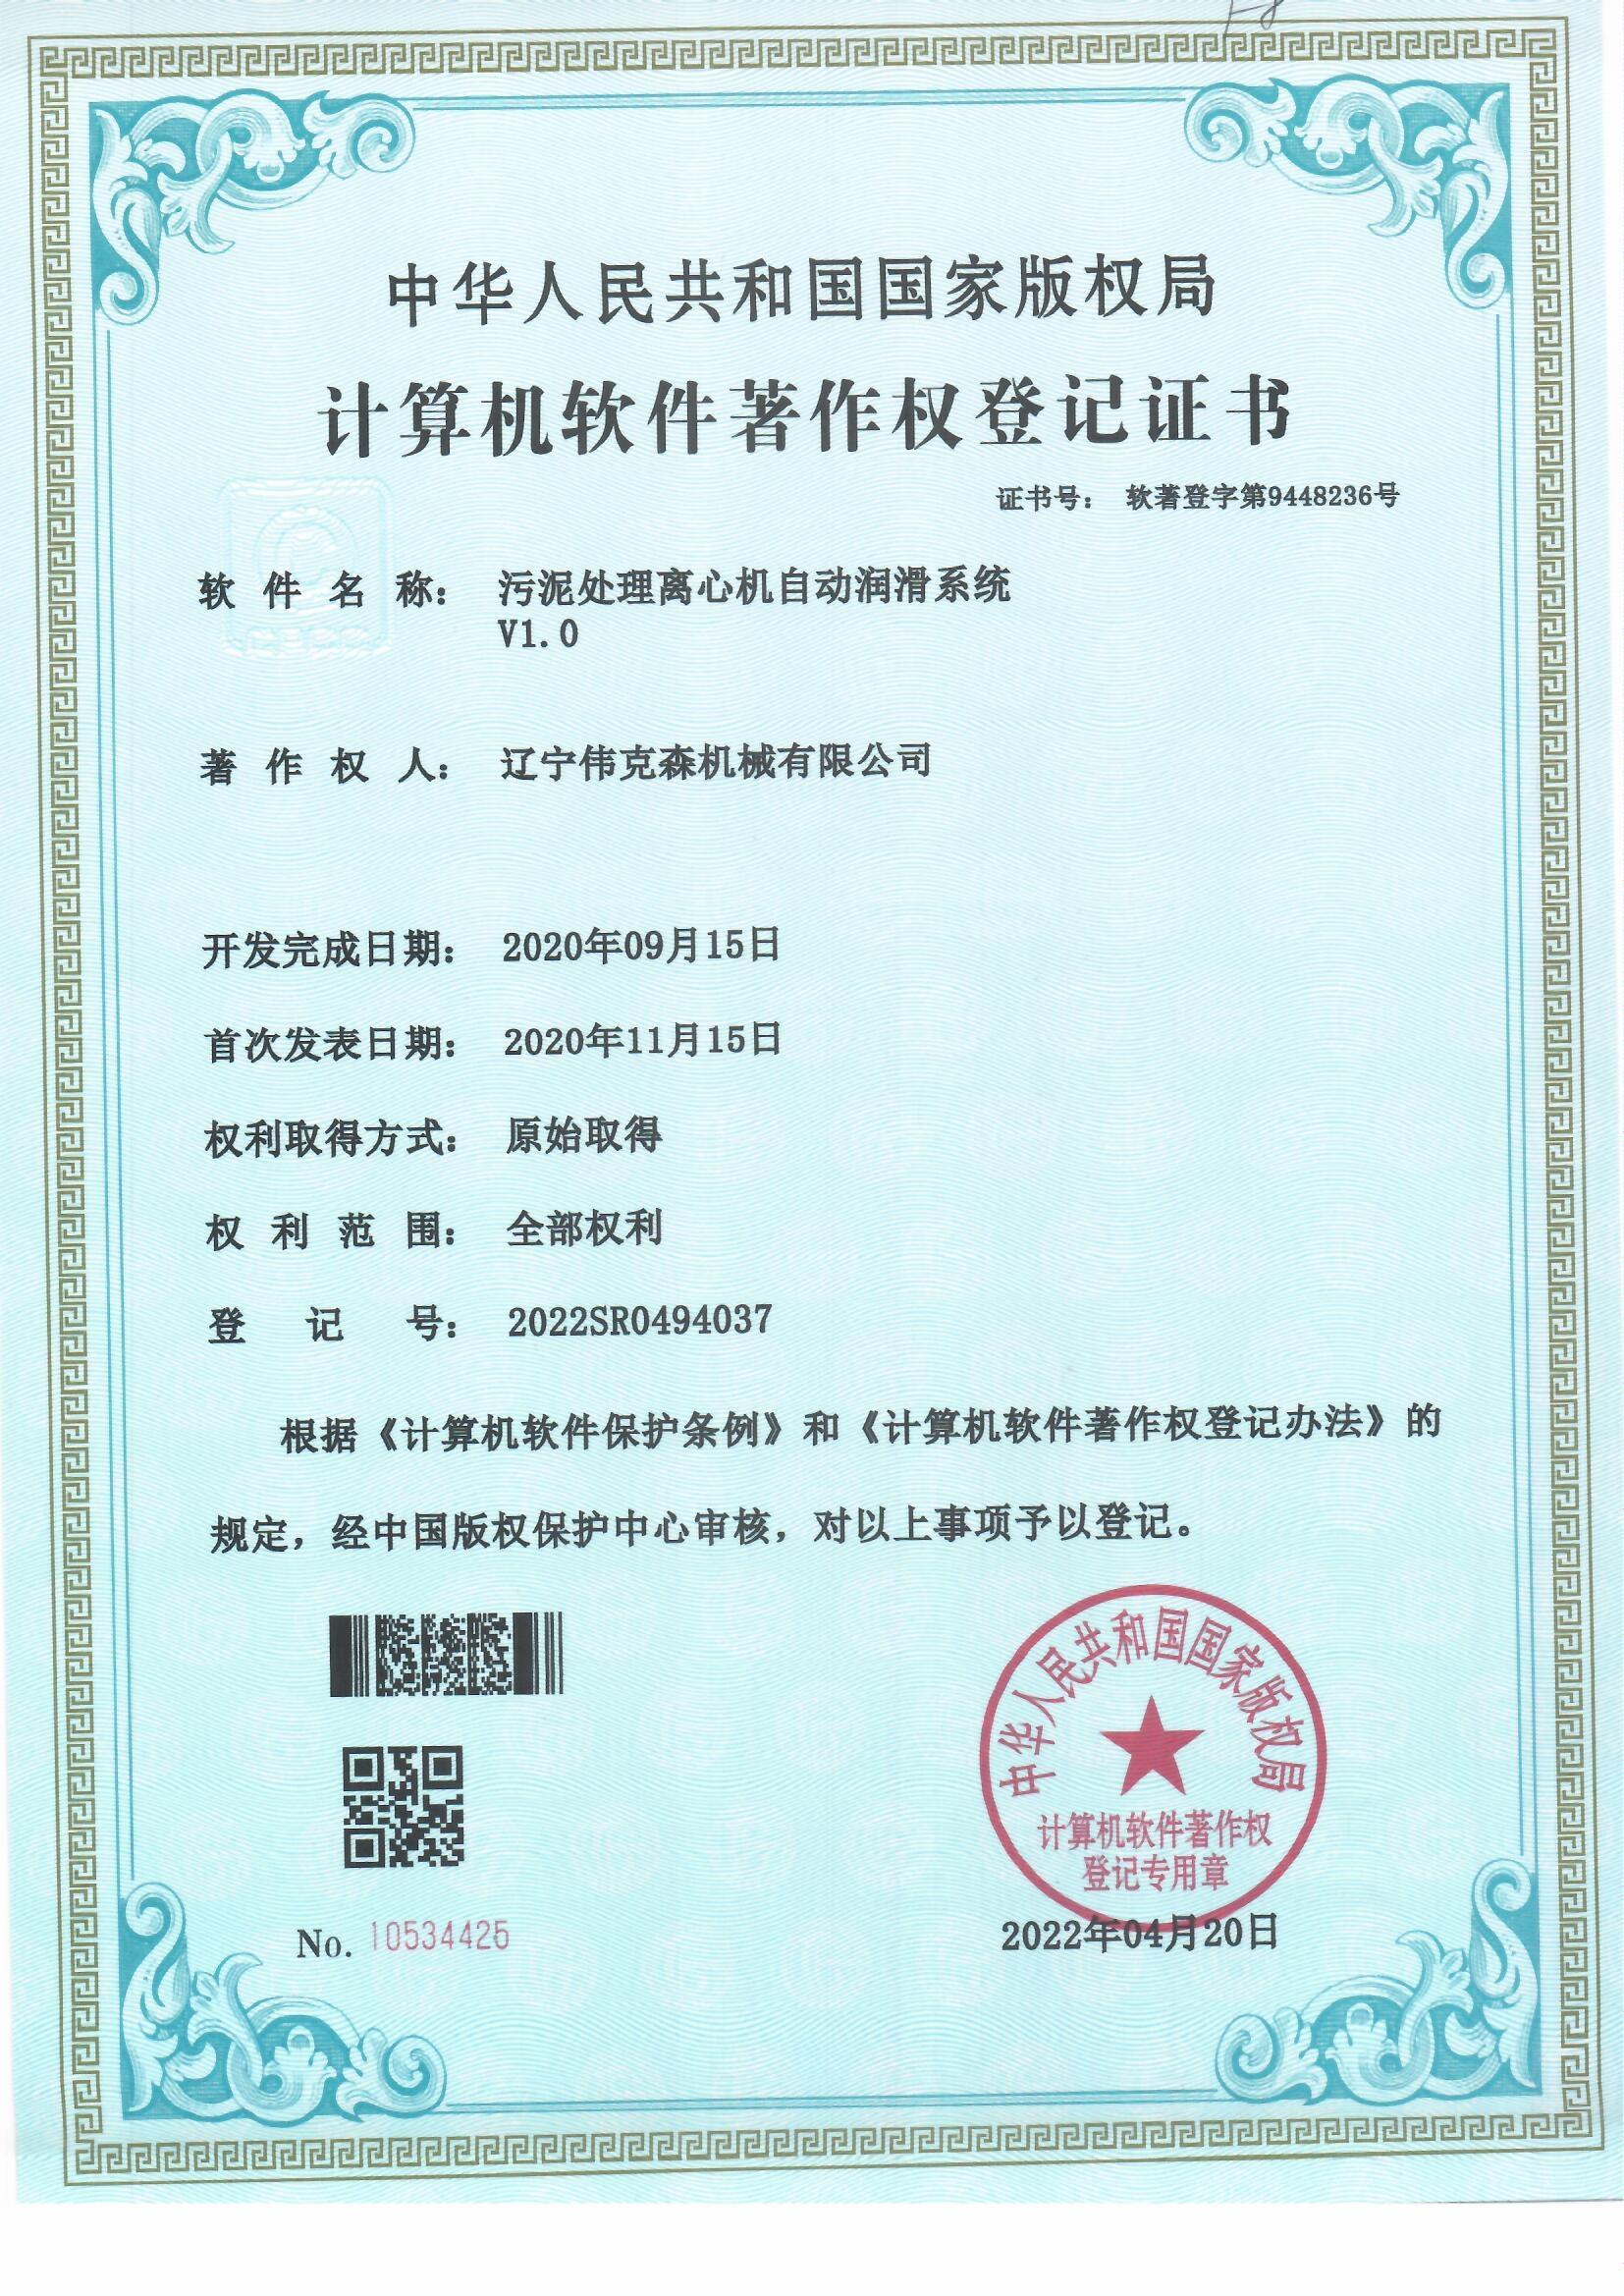 伟克森计算机软件著作权登记证书 (1)